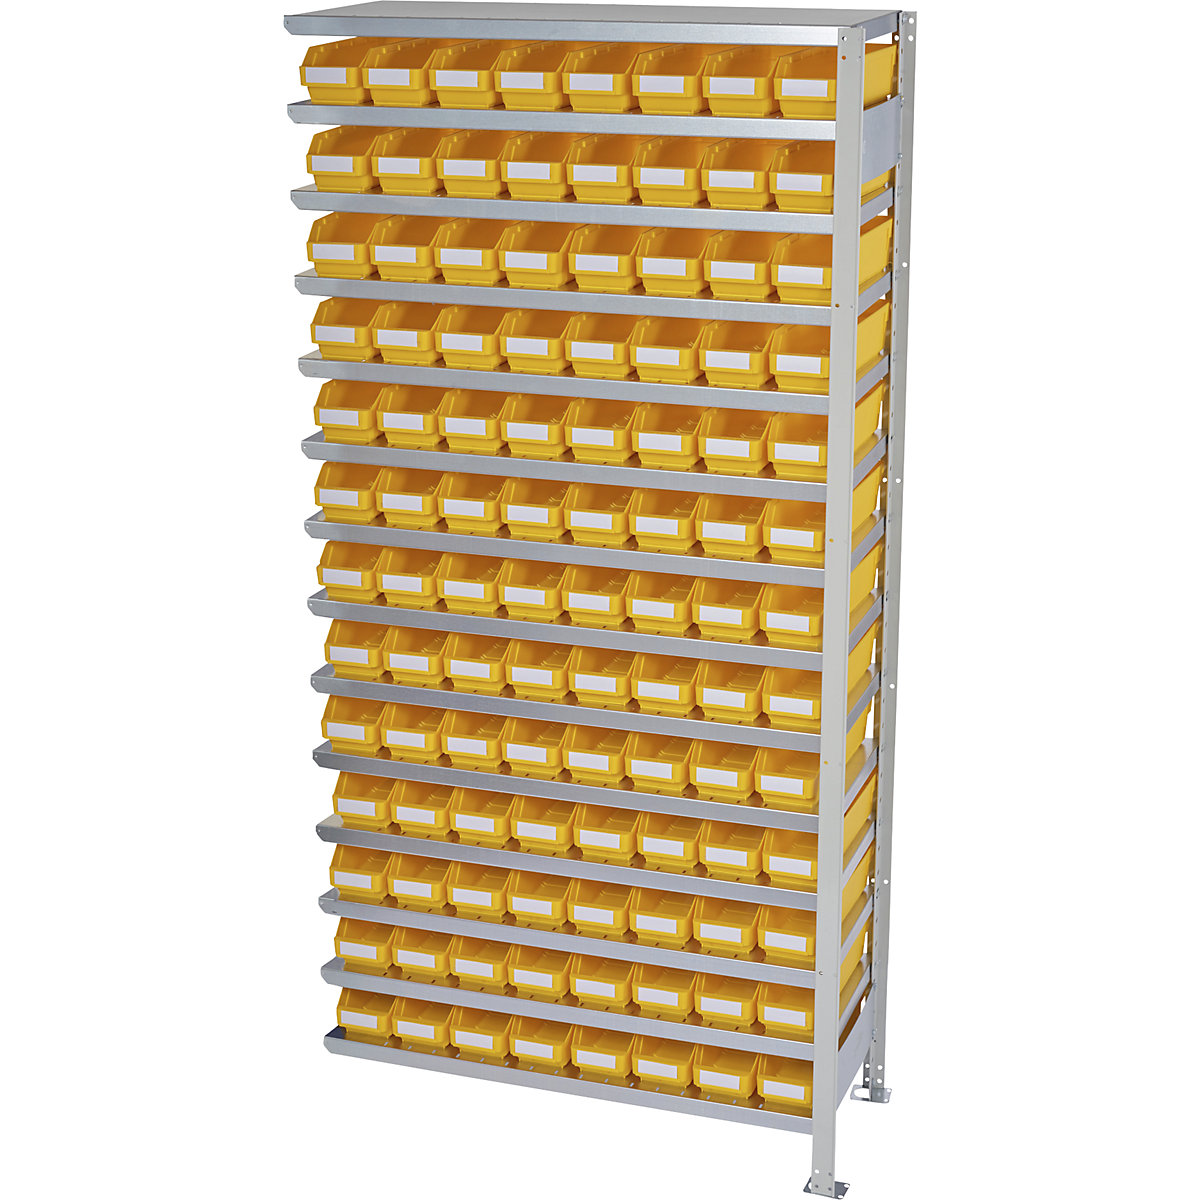 Összedugaszolós állvány dobozokkal – STEMO, állványmagasság 2100 mm, bővítő állvány, 400 mm mély, 104 sárga doboz-17